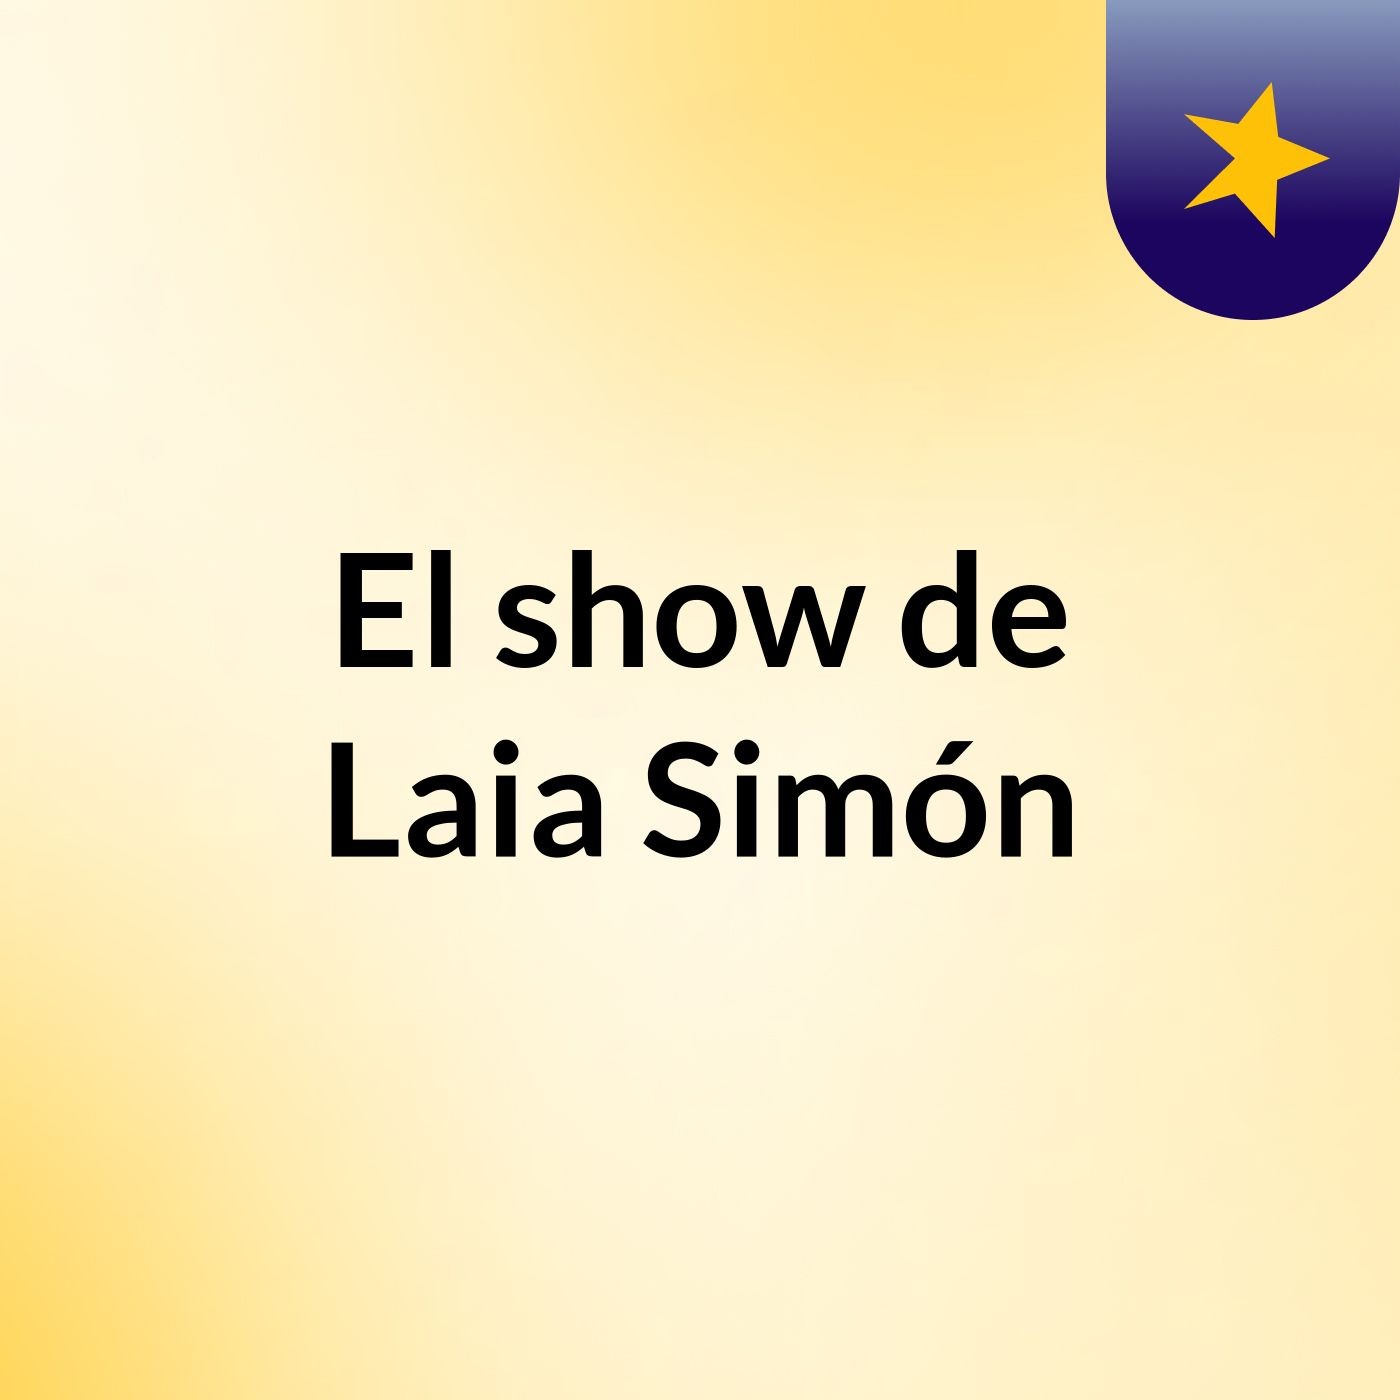 El show de Laia Simón